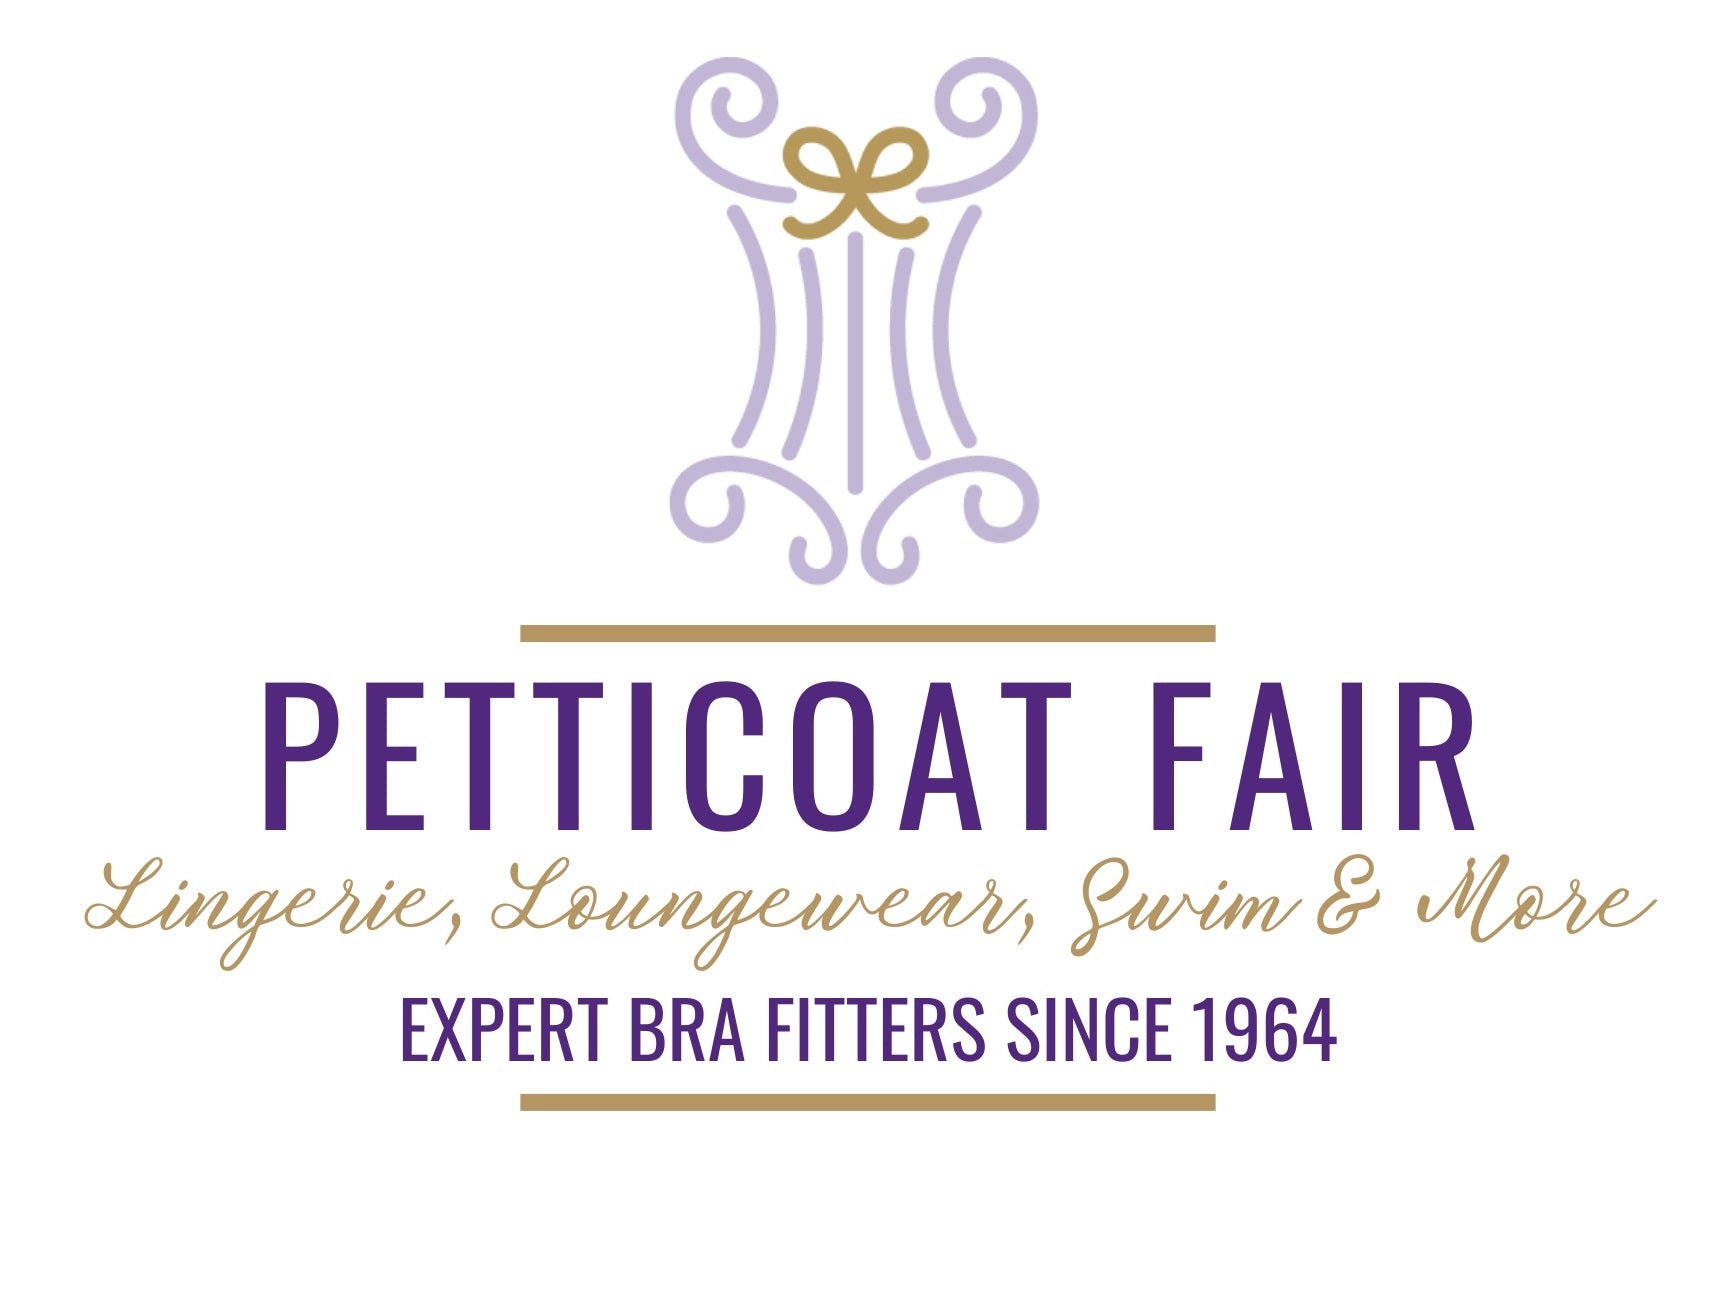 Petticoat Fair